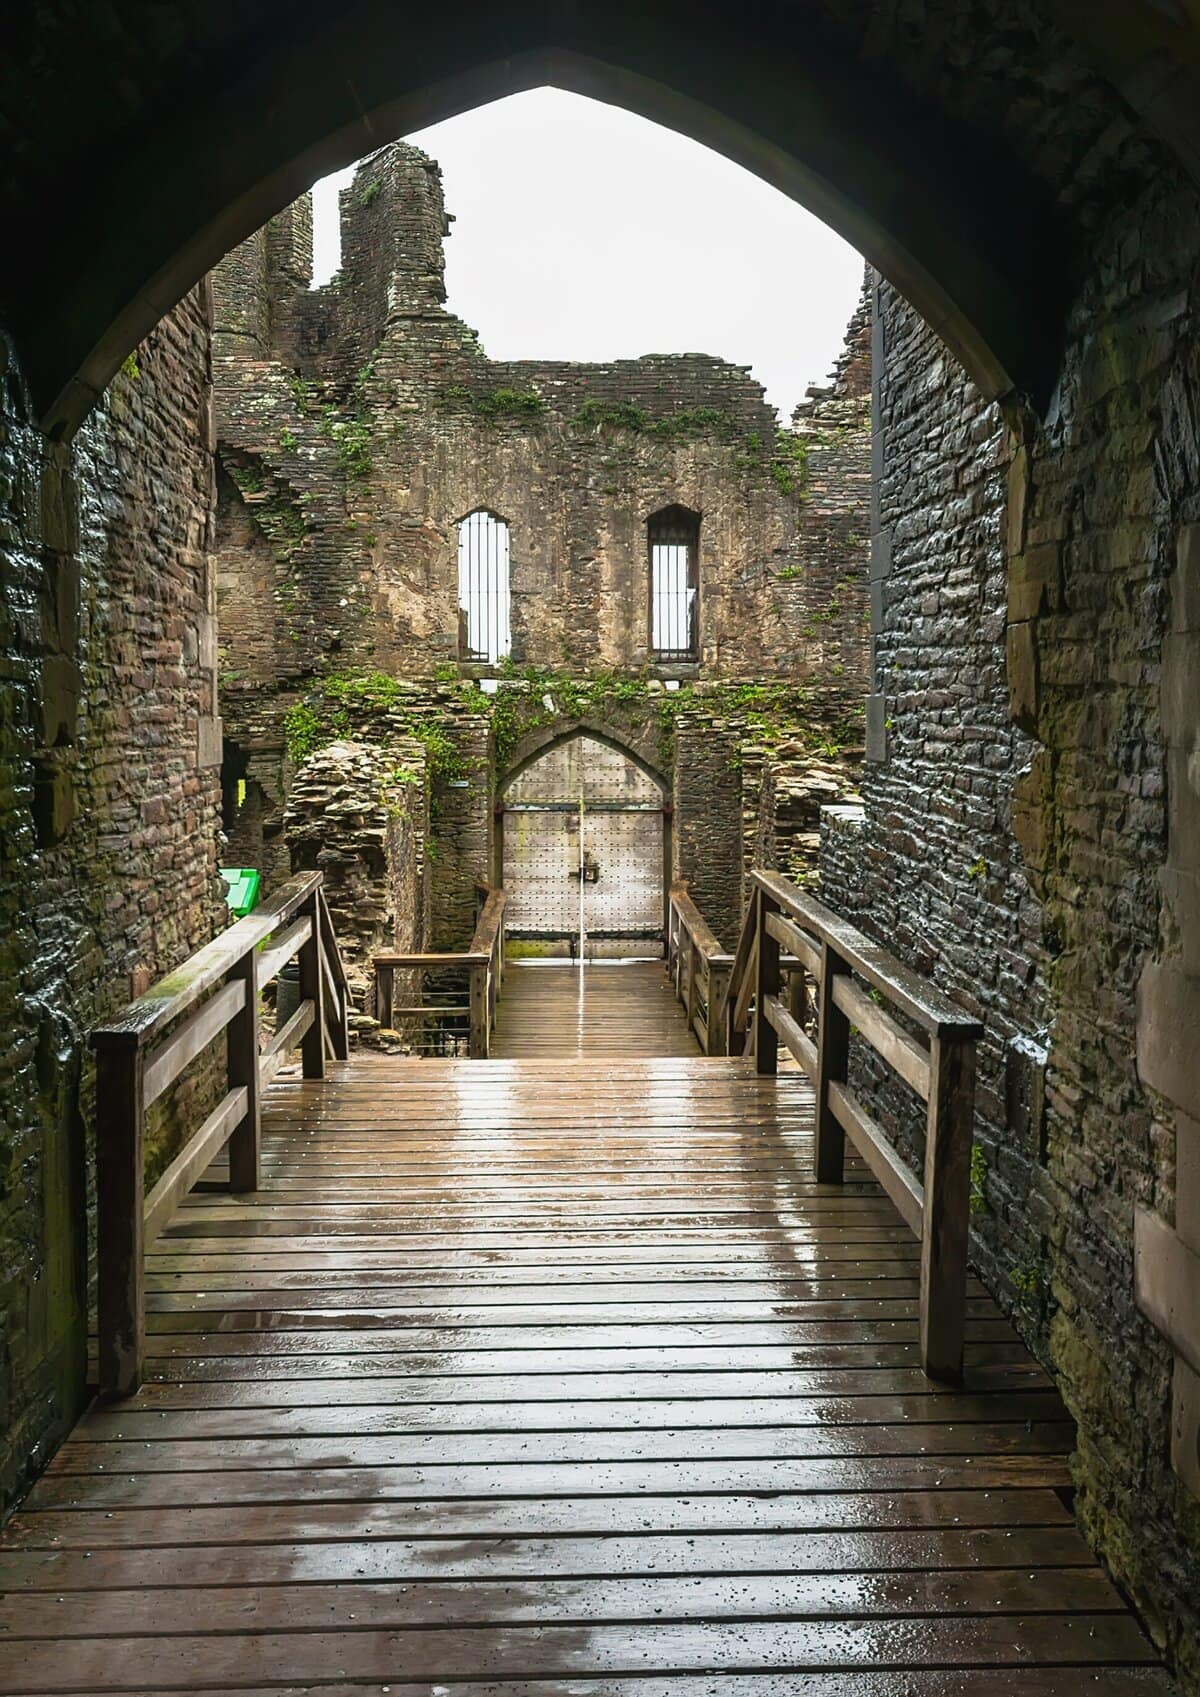 A walkway inside Caerphilly Castle in Wales